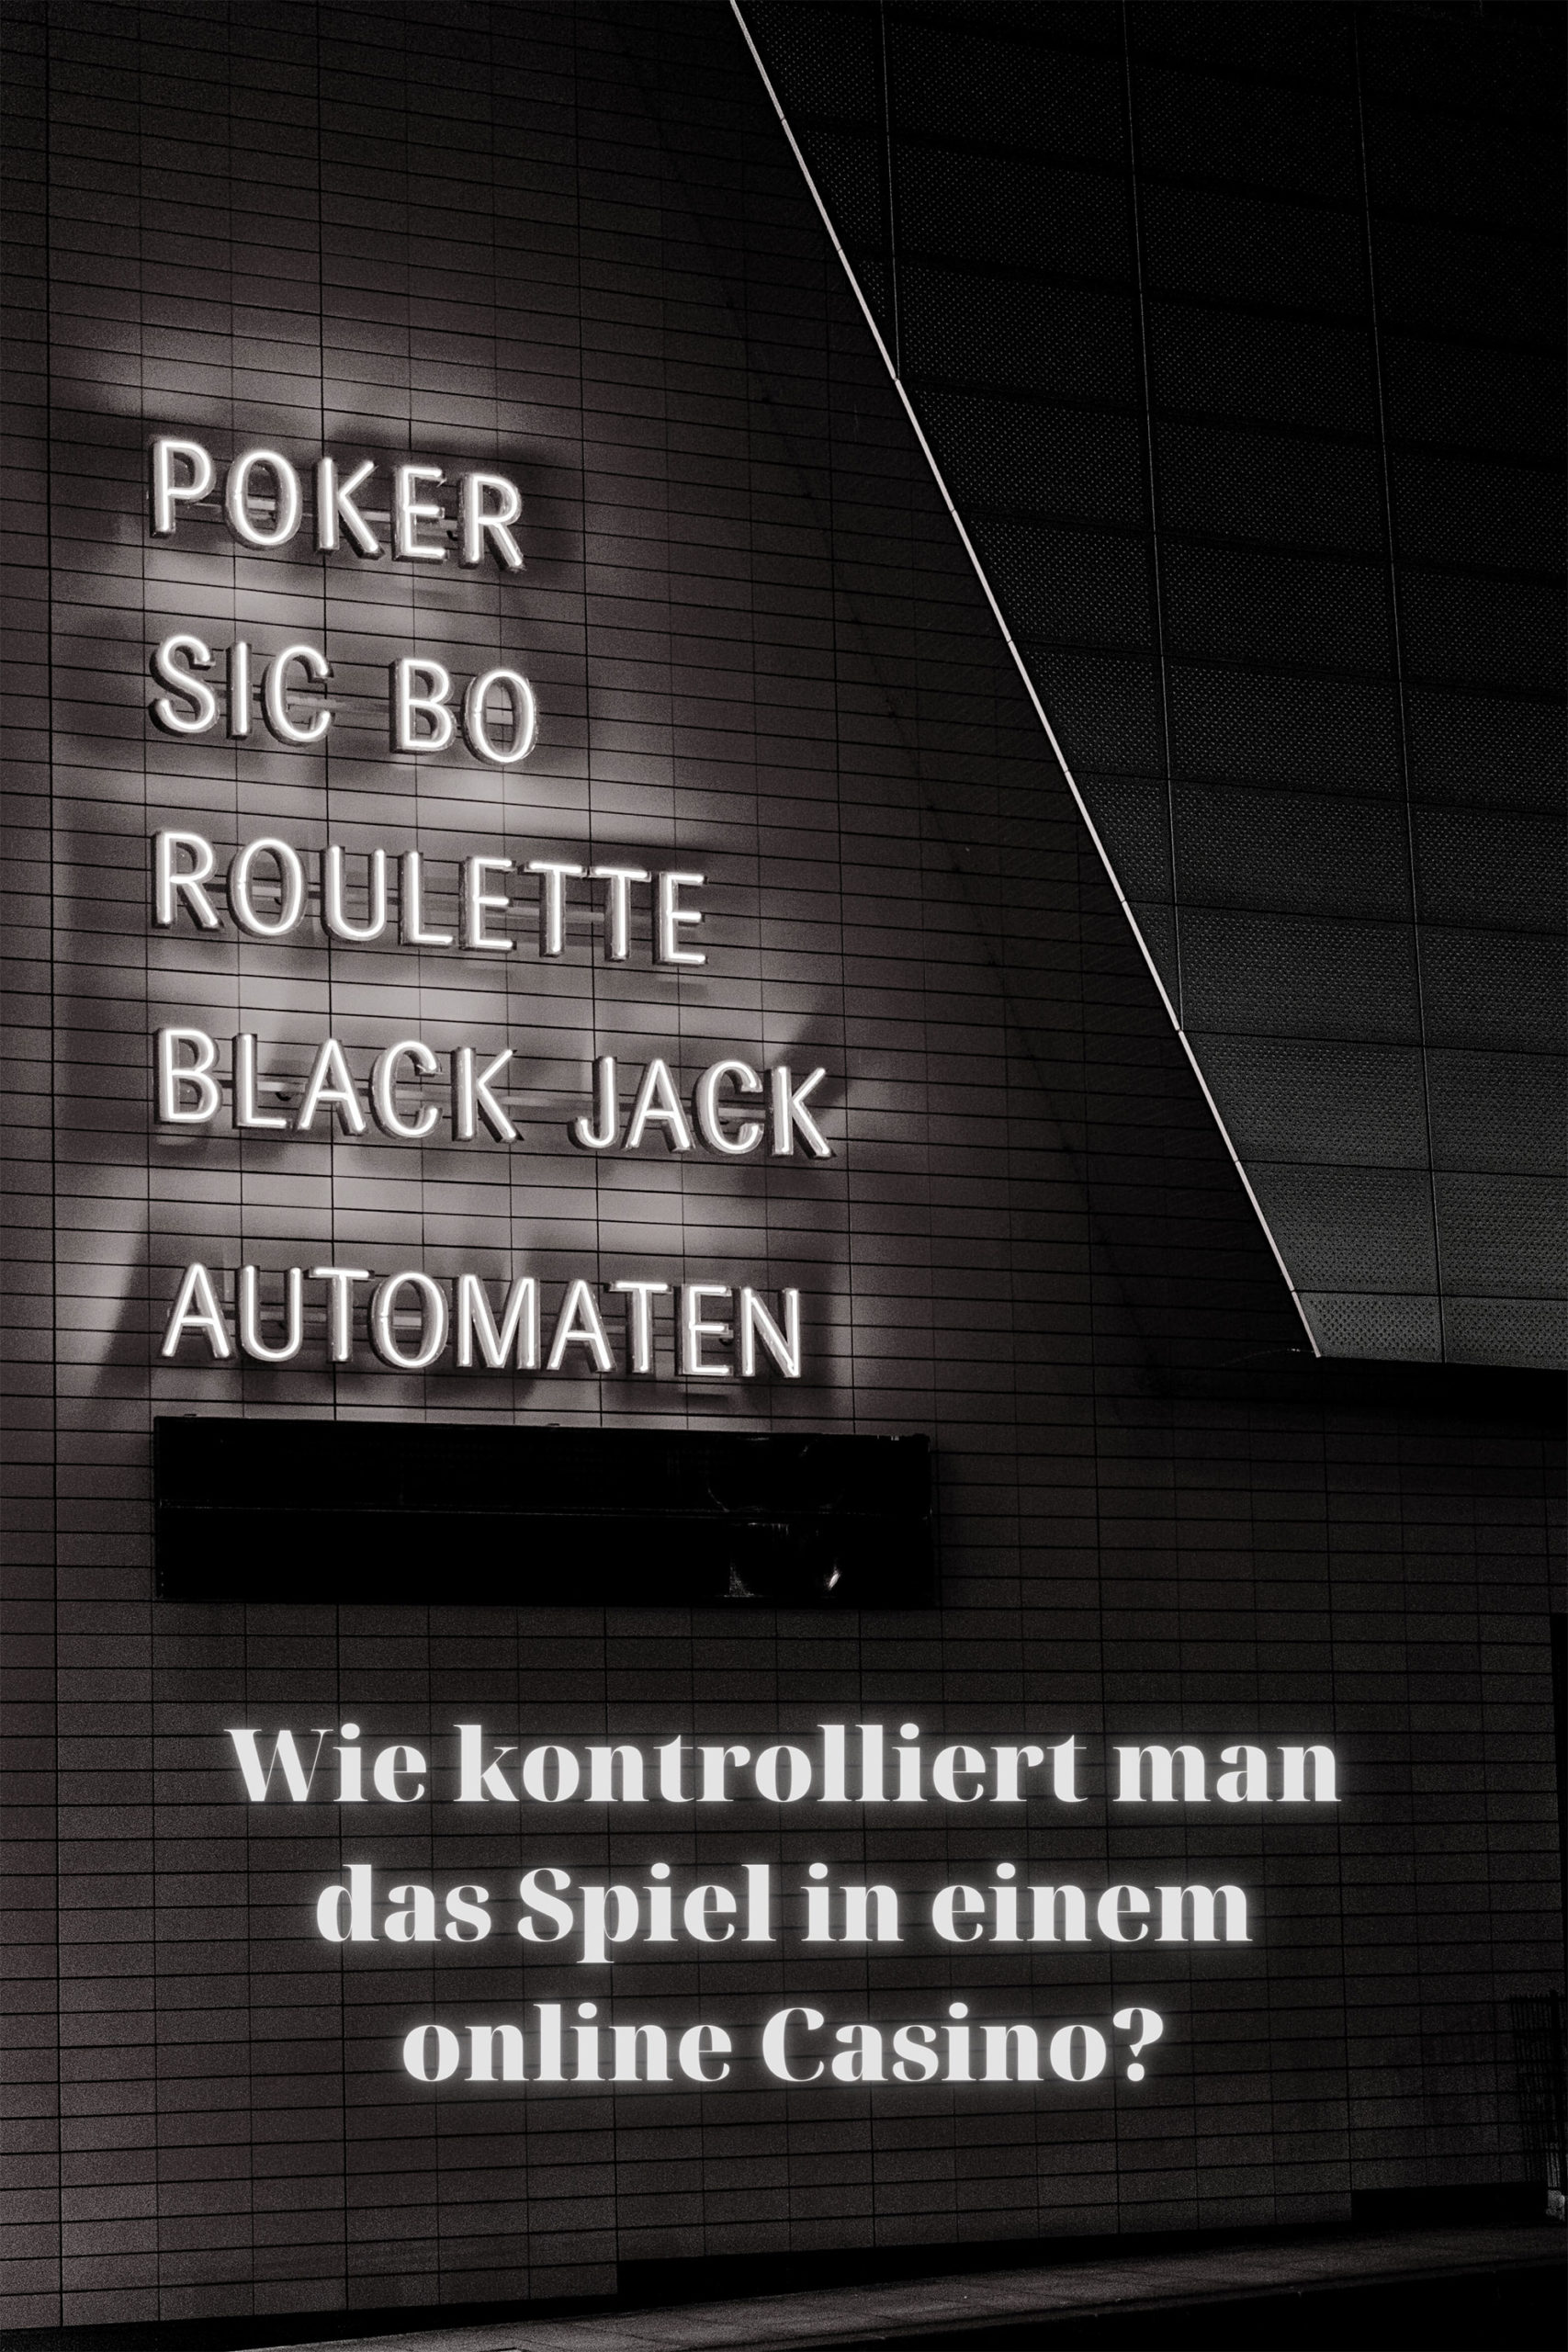 Online Casinos Österreich legal führt nicht zu finanziellem Wohlstand